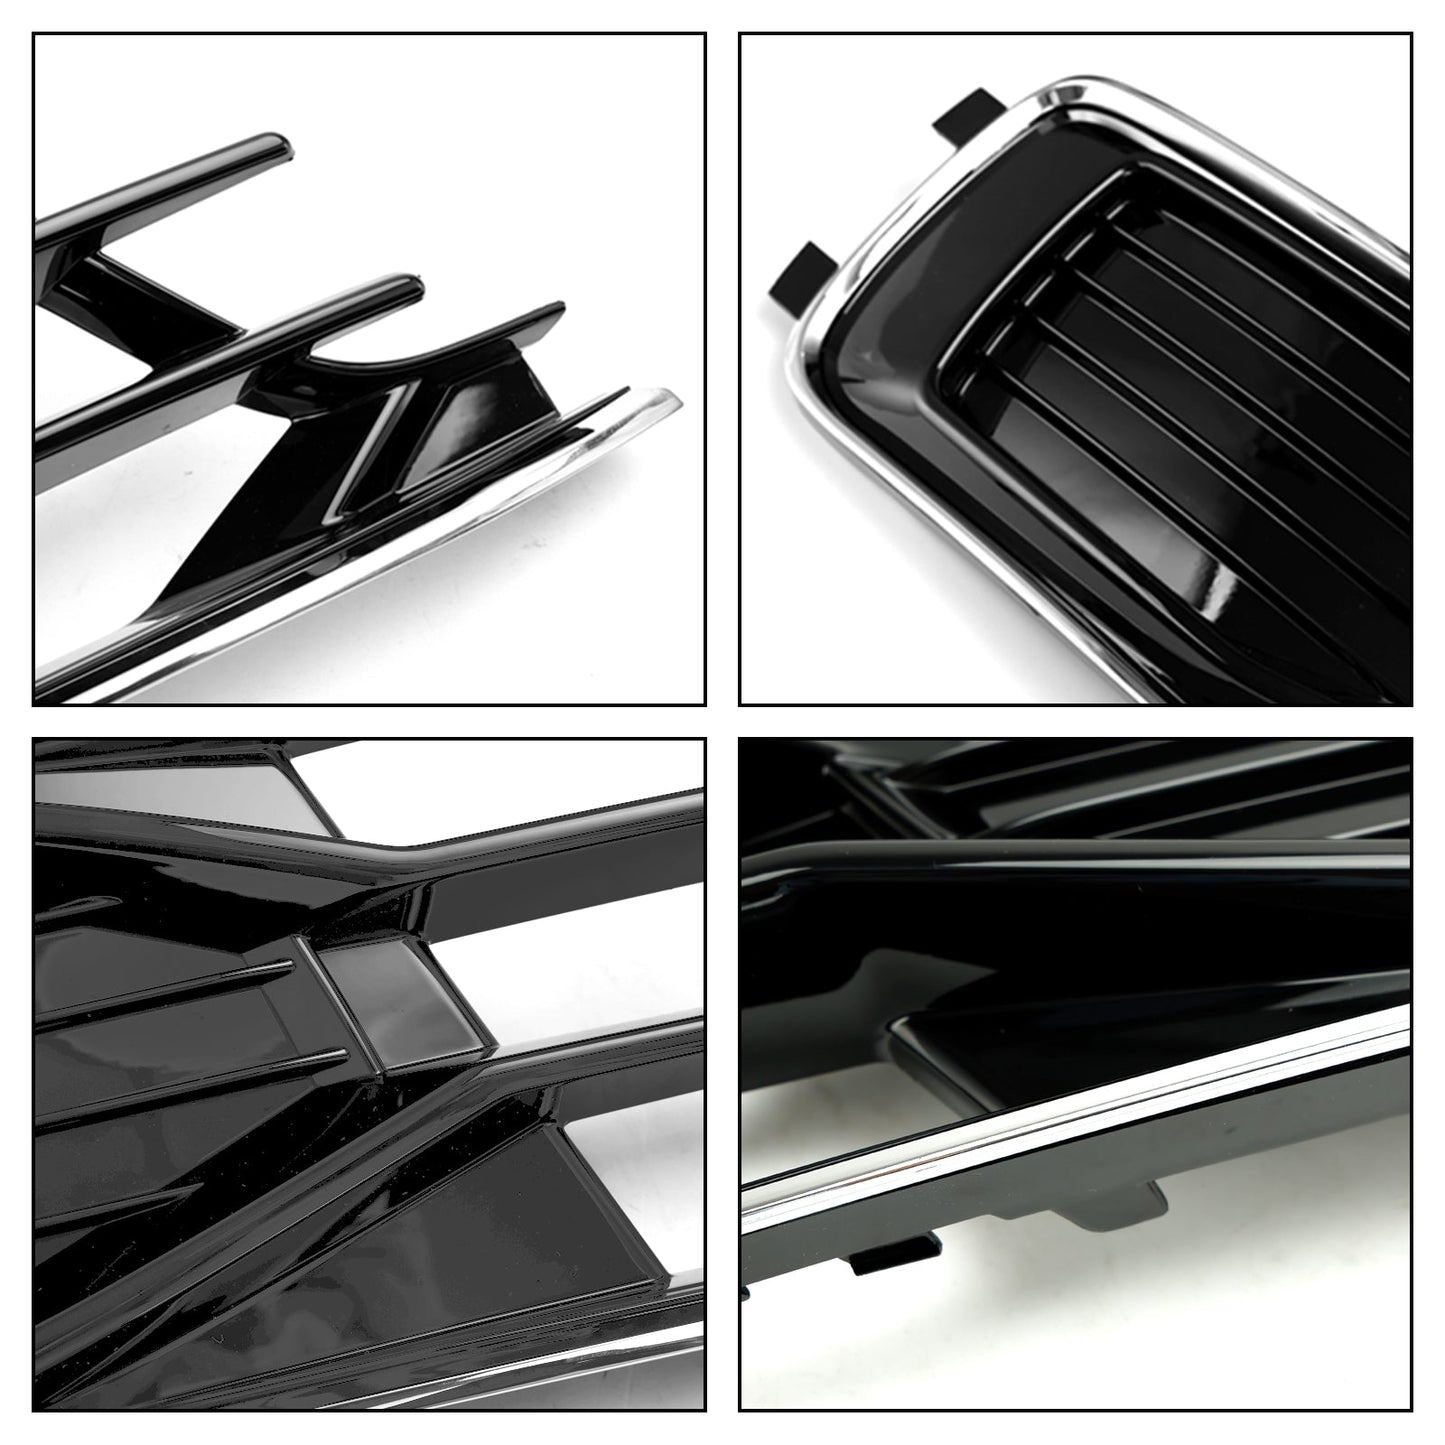 Audi A6 C7 2014-2018 2 pezzi griglia di copertura fendinebbia paraurti anteriore nera cromata